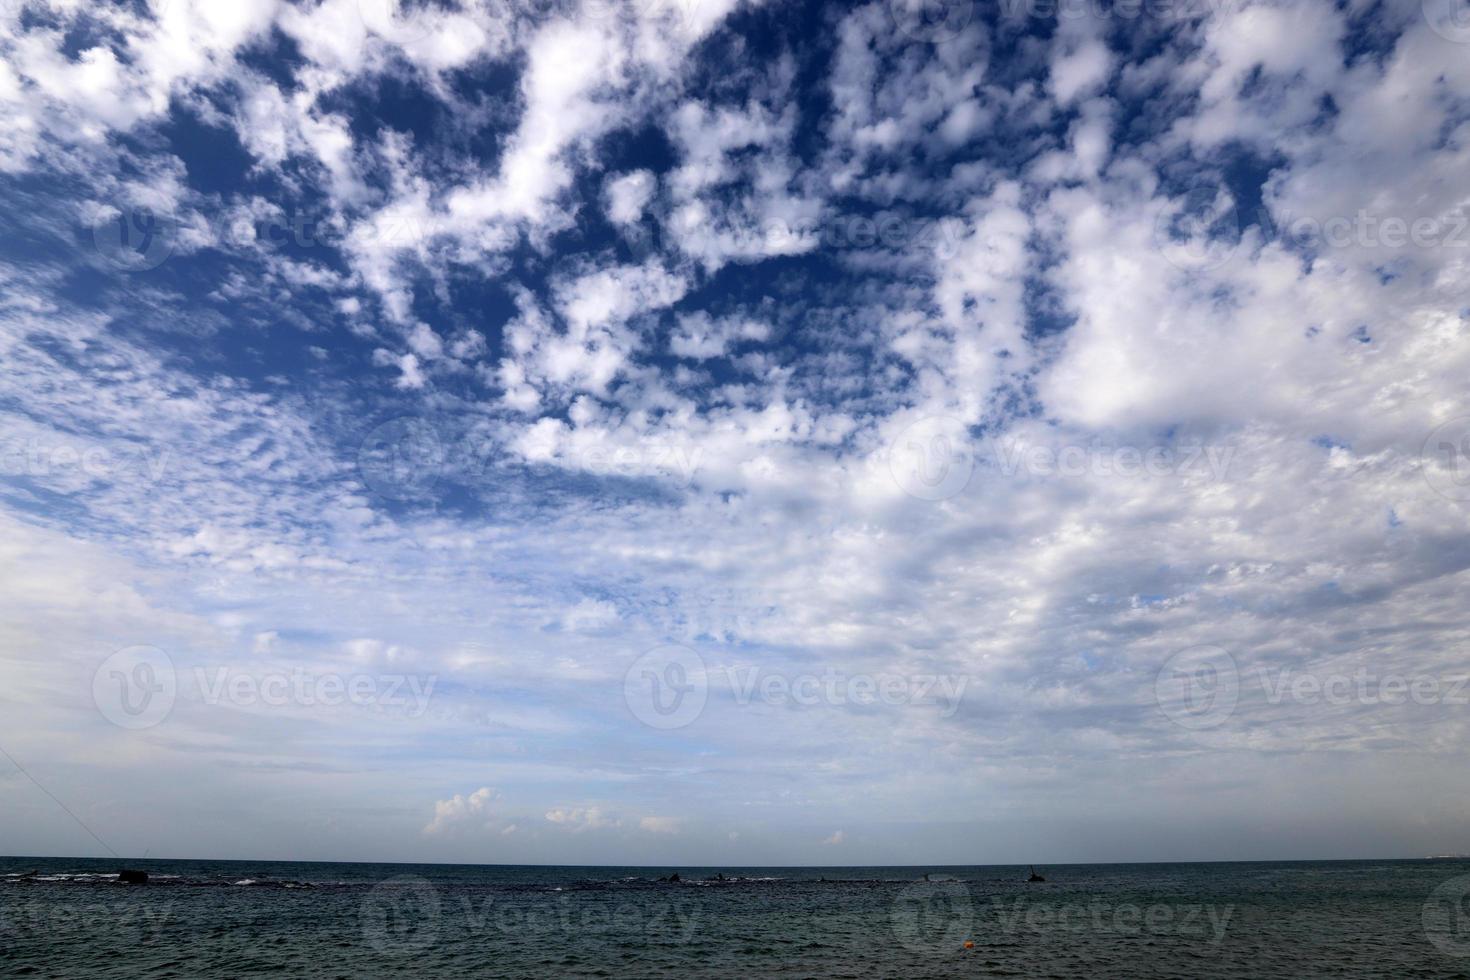 nuvens no céu sobre o mar Mediterrâneo. foto